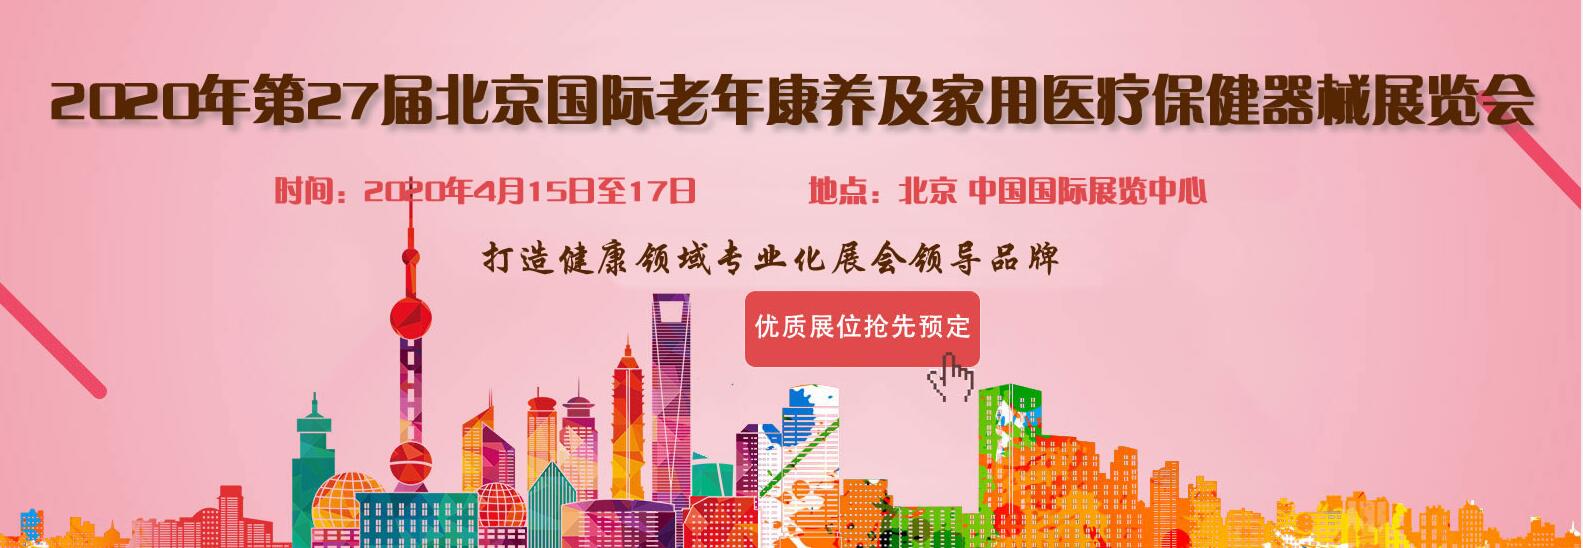 2020北京国际老年康养护理及家庭医疗保健展览会